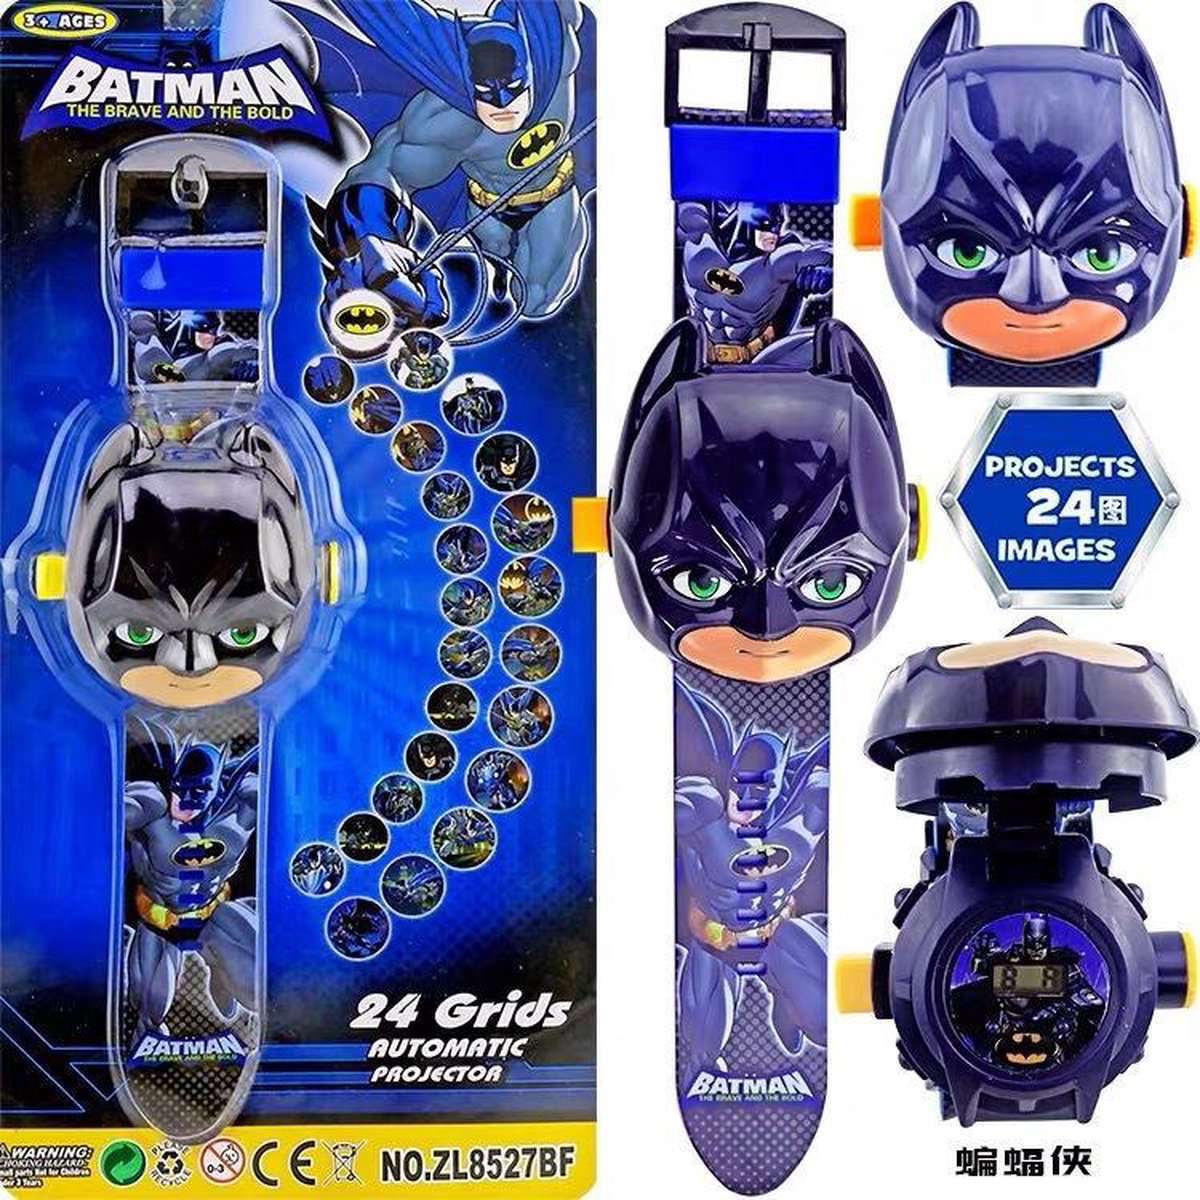 Batman horloge - Batman projector horloge - Digitale Batman horloge - Speelgoed horloge